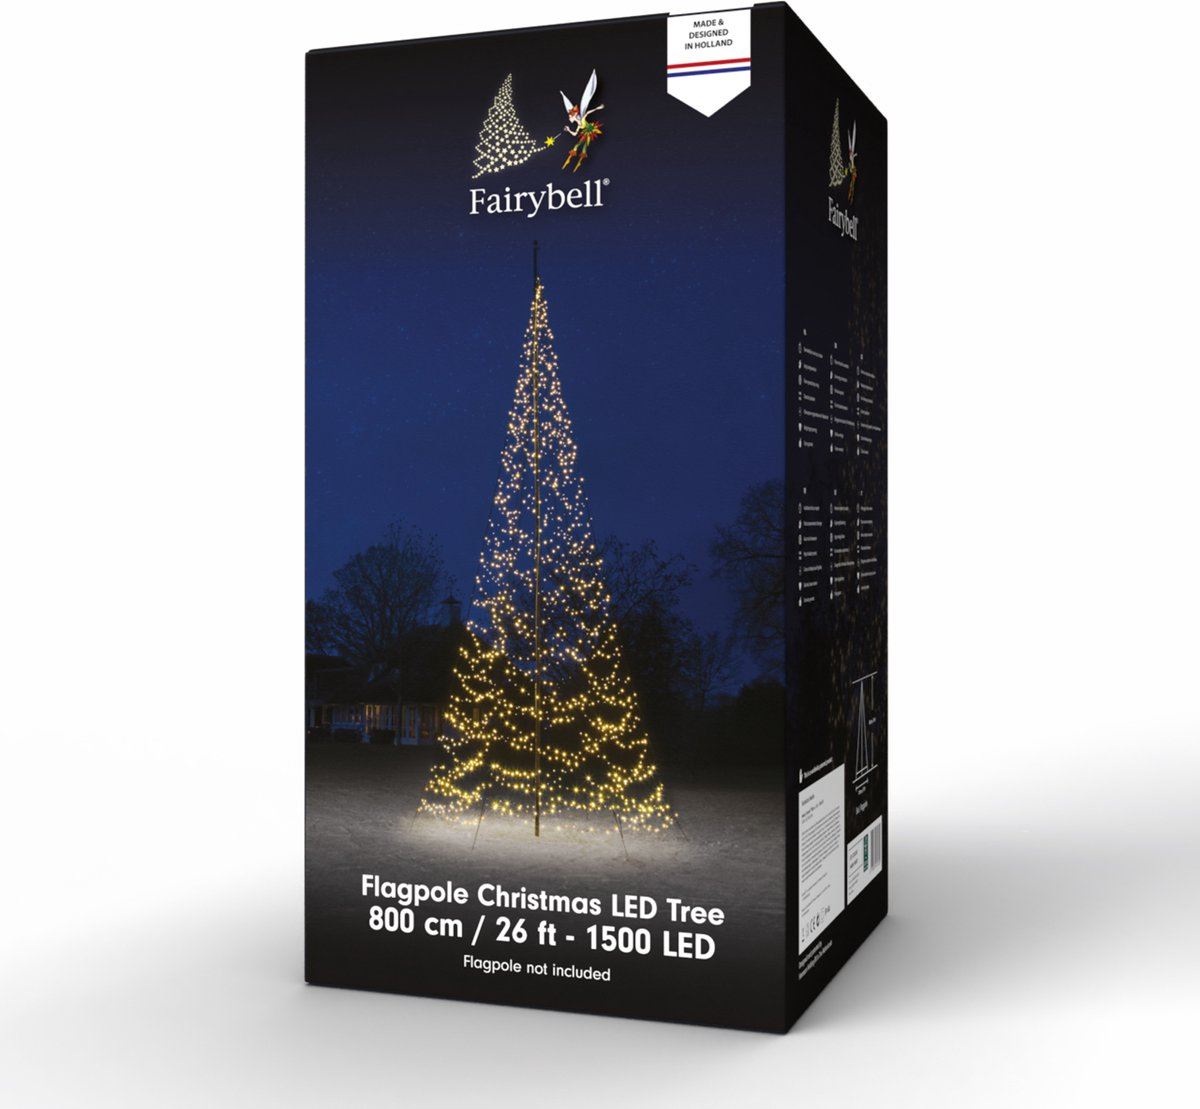 Fairybell-kerstverlichting-kerstboom-met-twinkle-effect-8M-hoog-1500-LED-lampjes-met-warmwitte-kleur